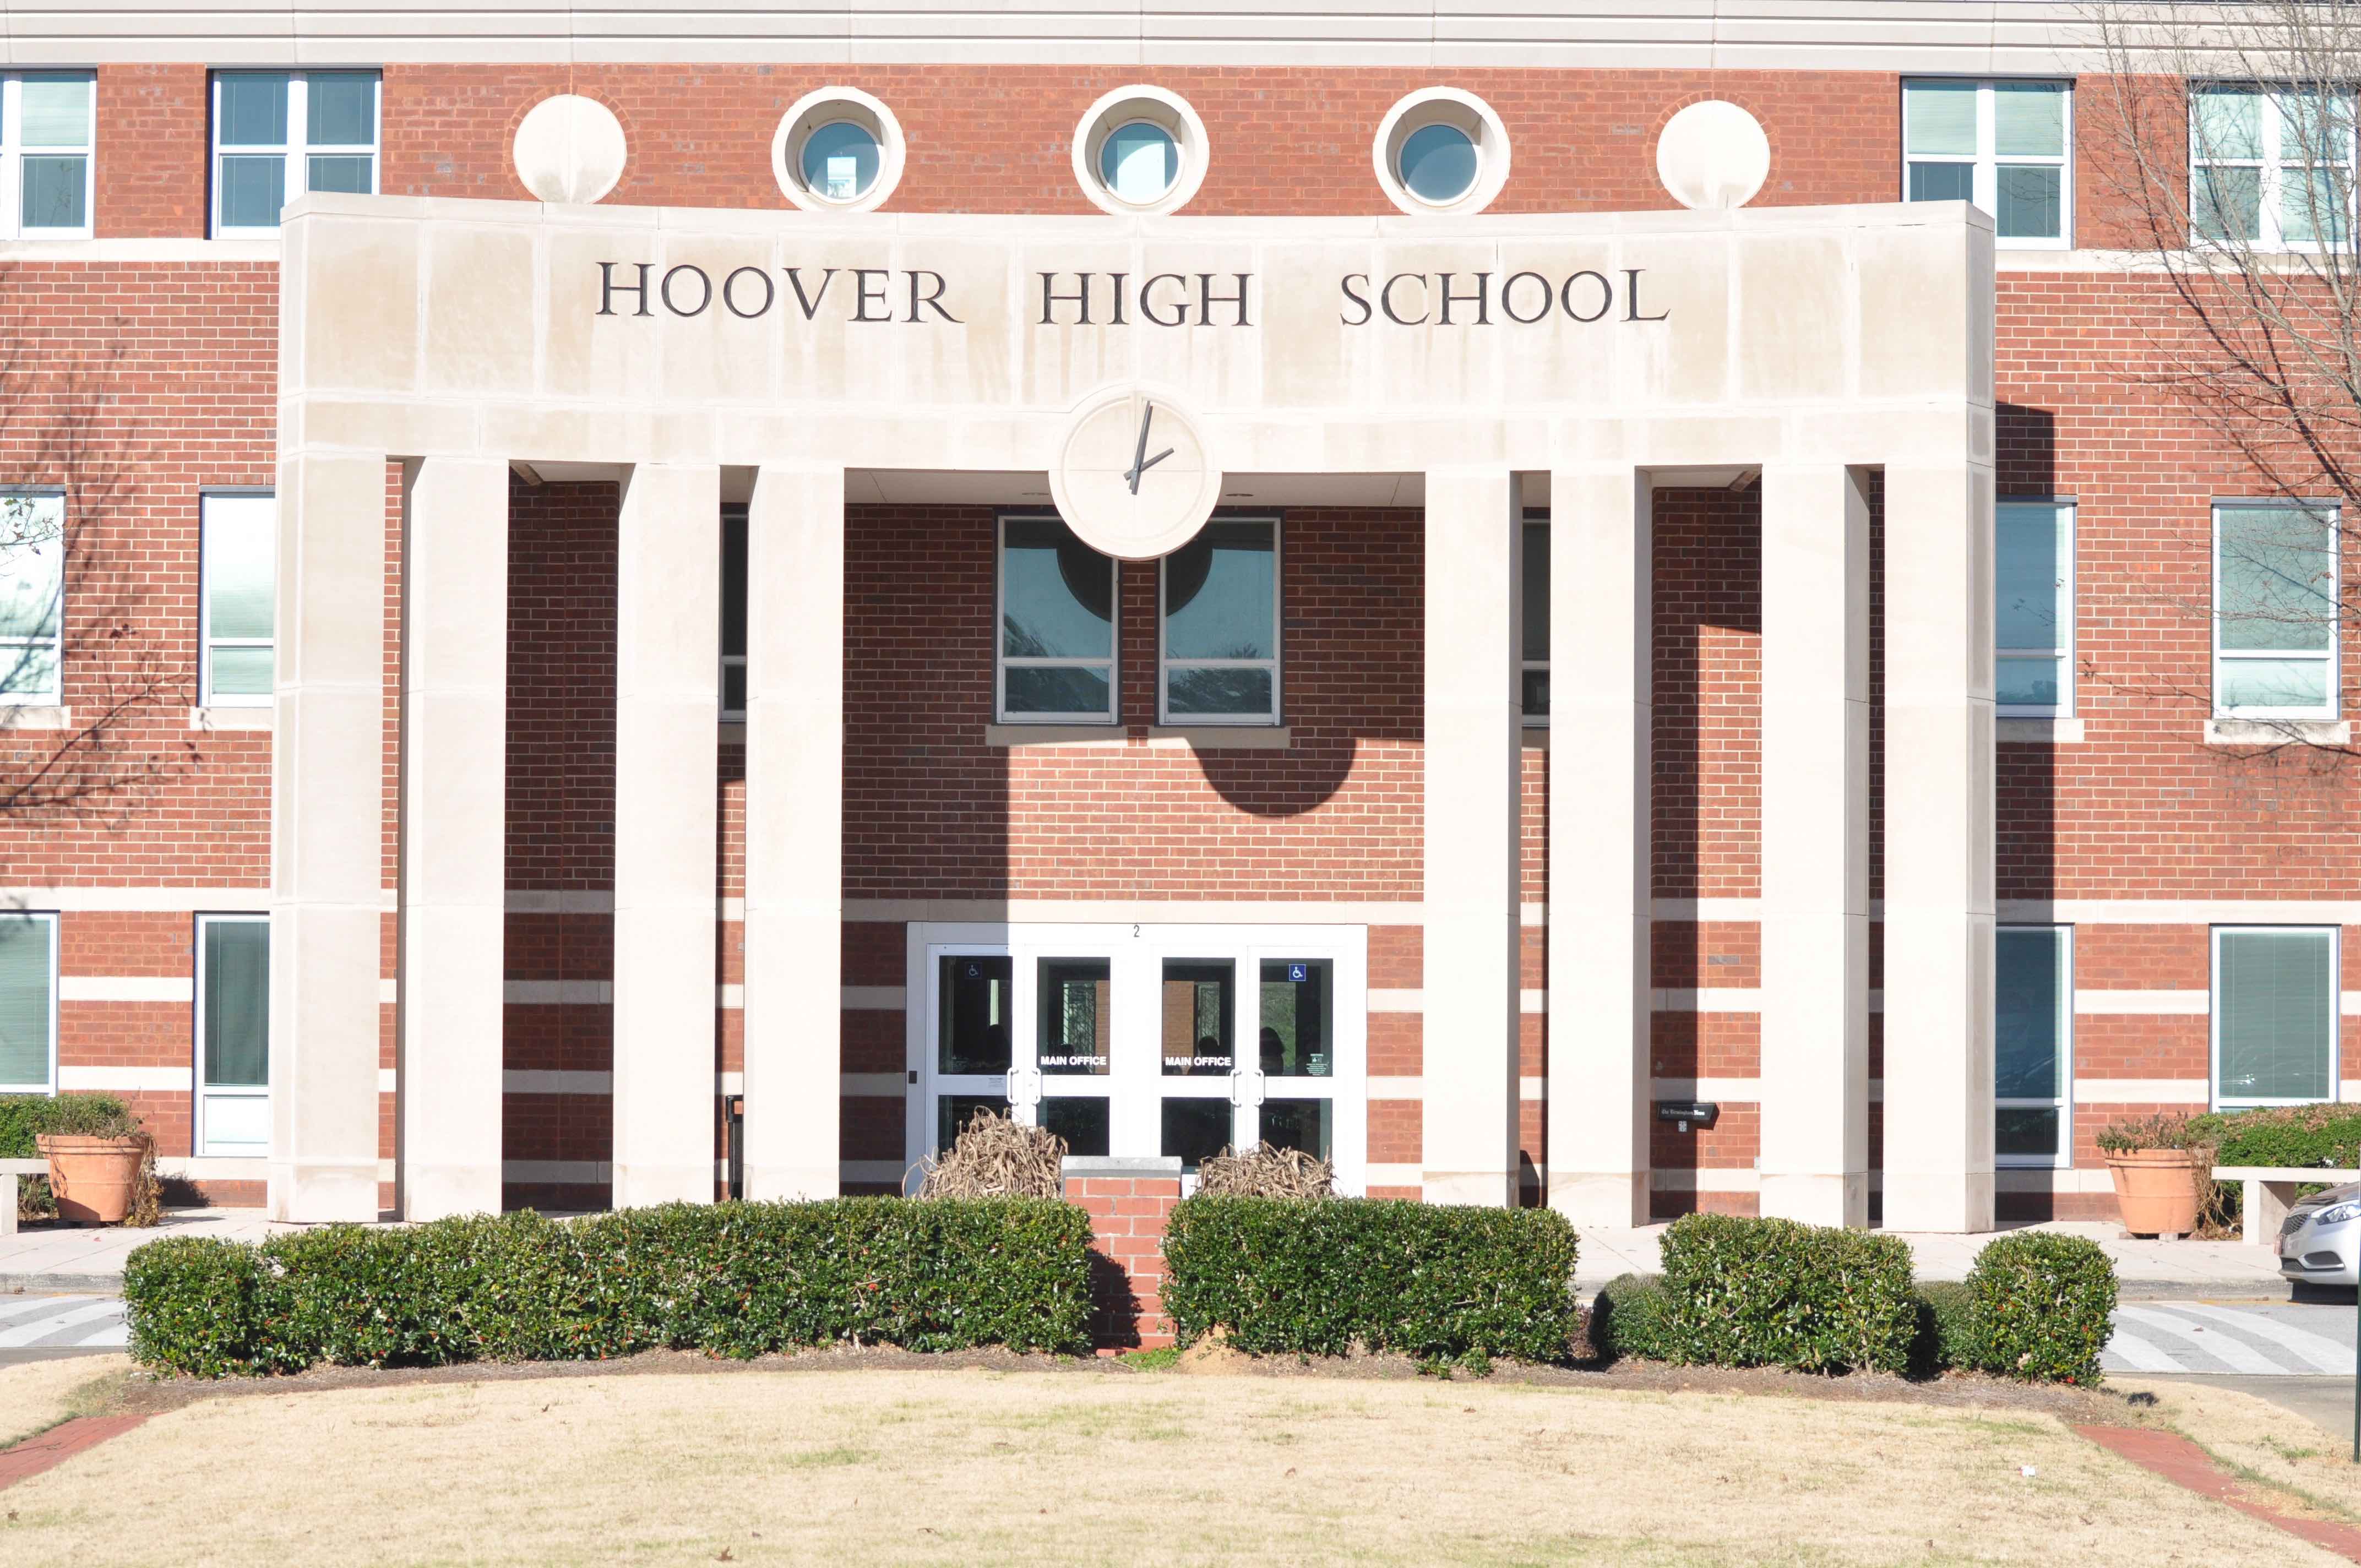 hoover high school mattress sale